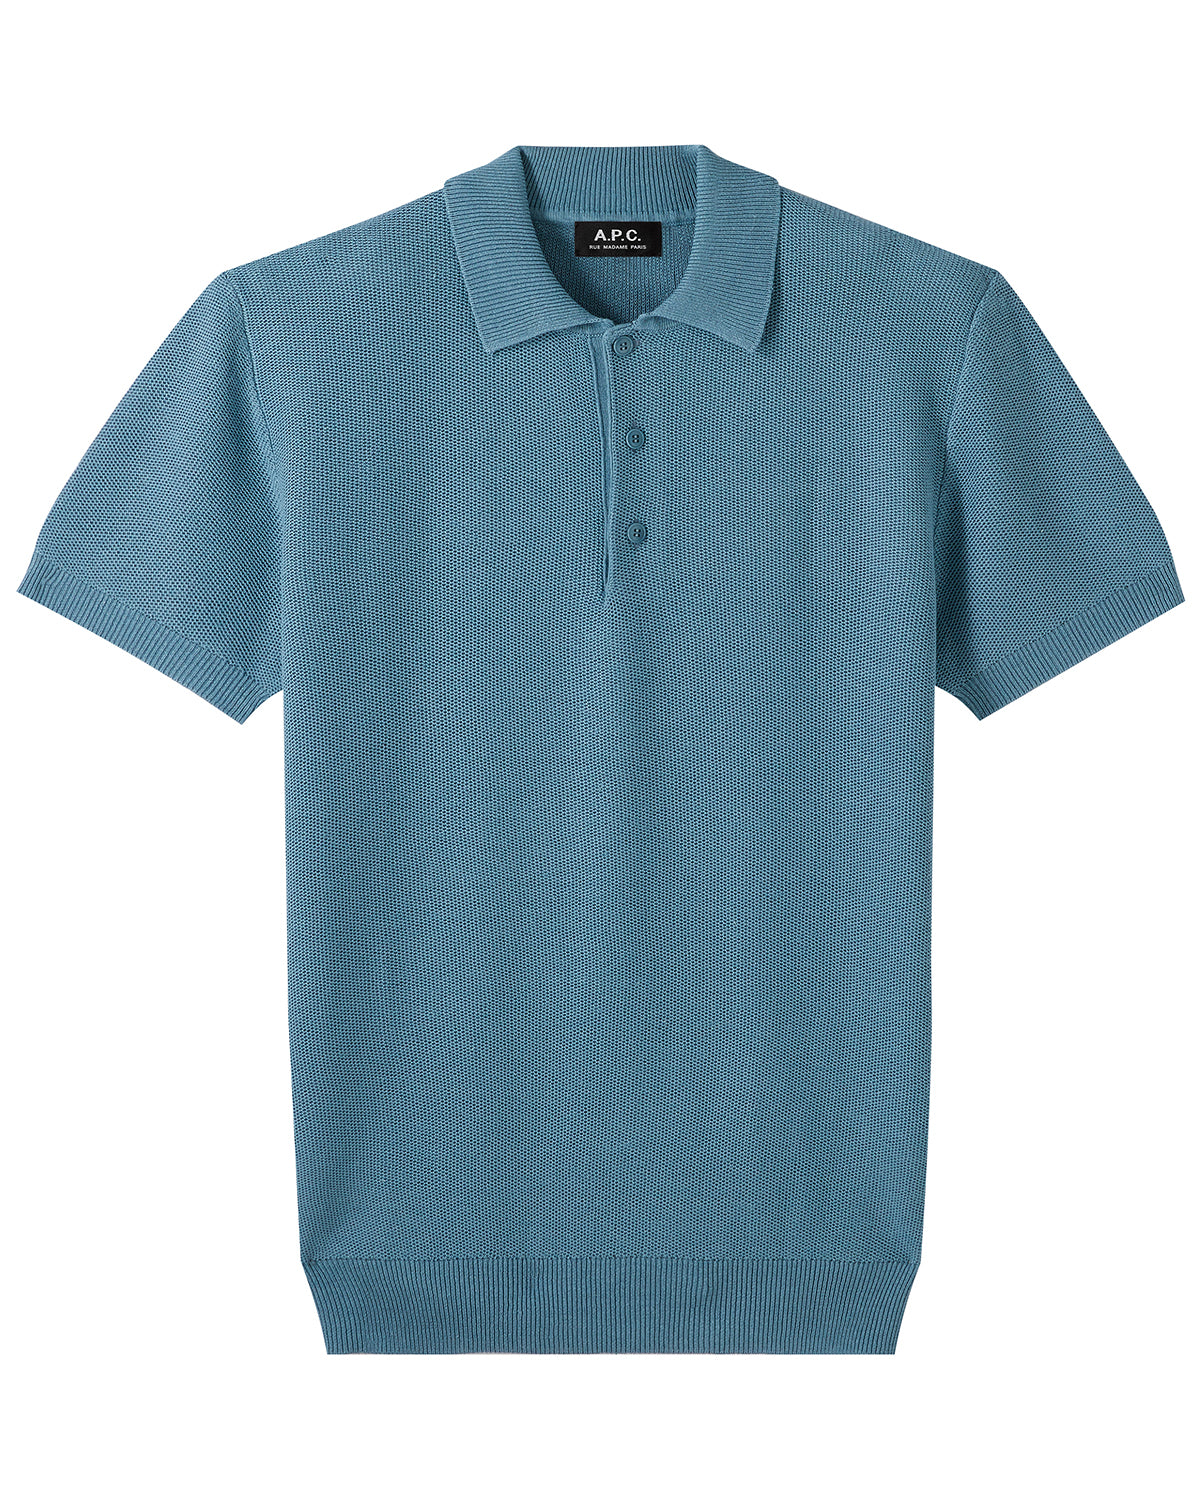 A.P.C. Polo Fred Bleu Gris Shirt S/S Men